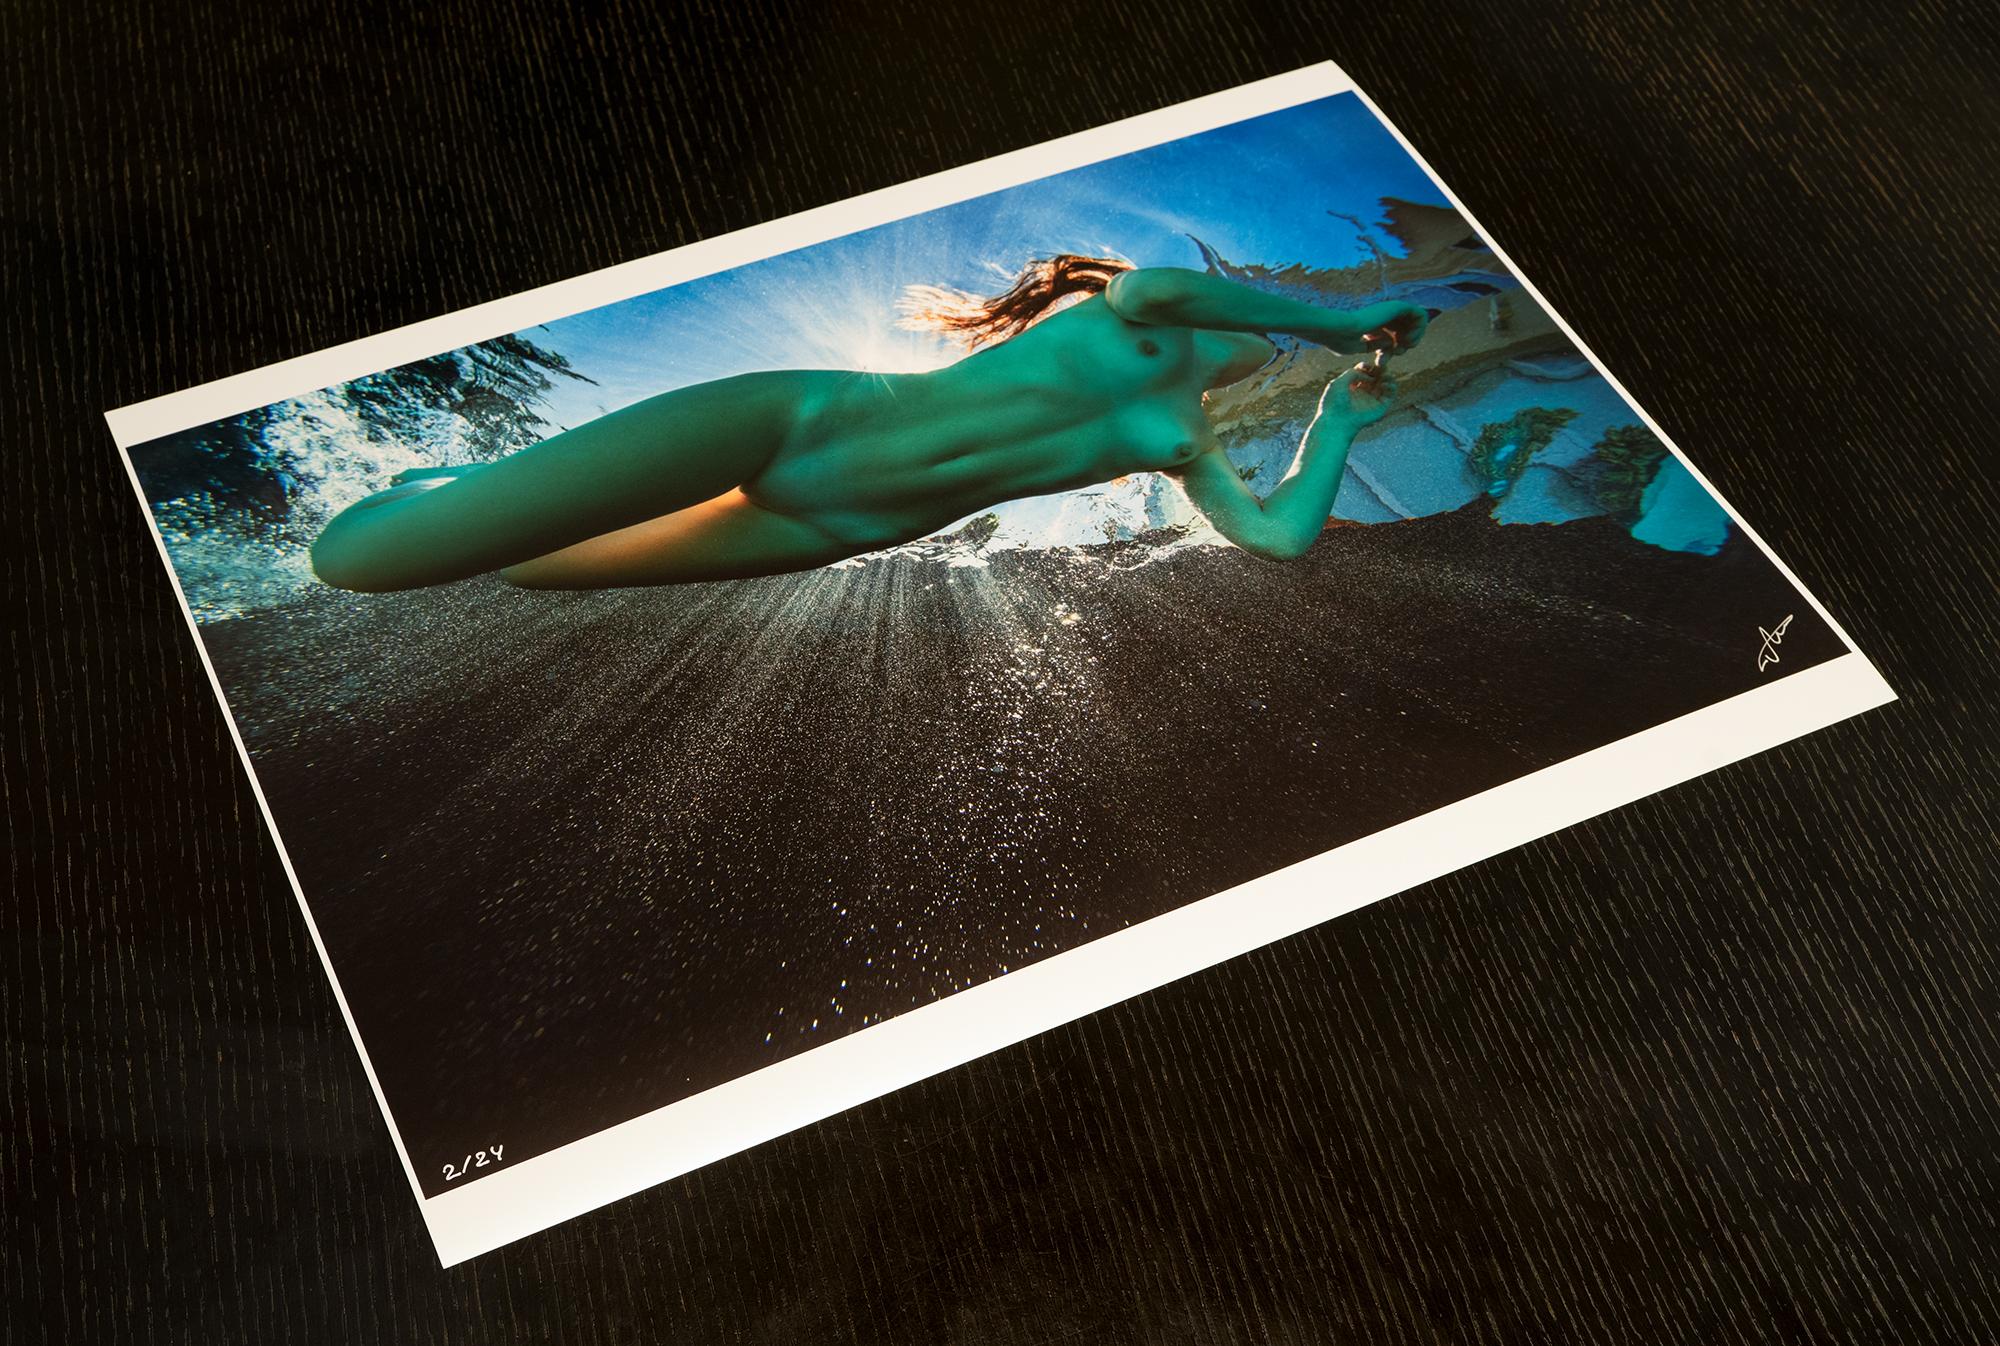 La vraie sirène - photographie de nu sous-marine - impression pigmentaire d'archives 18x24